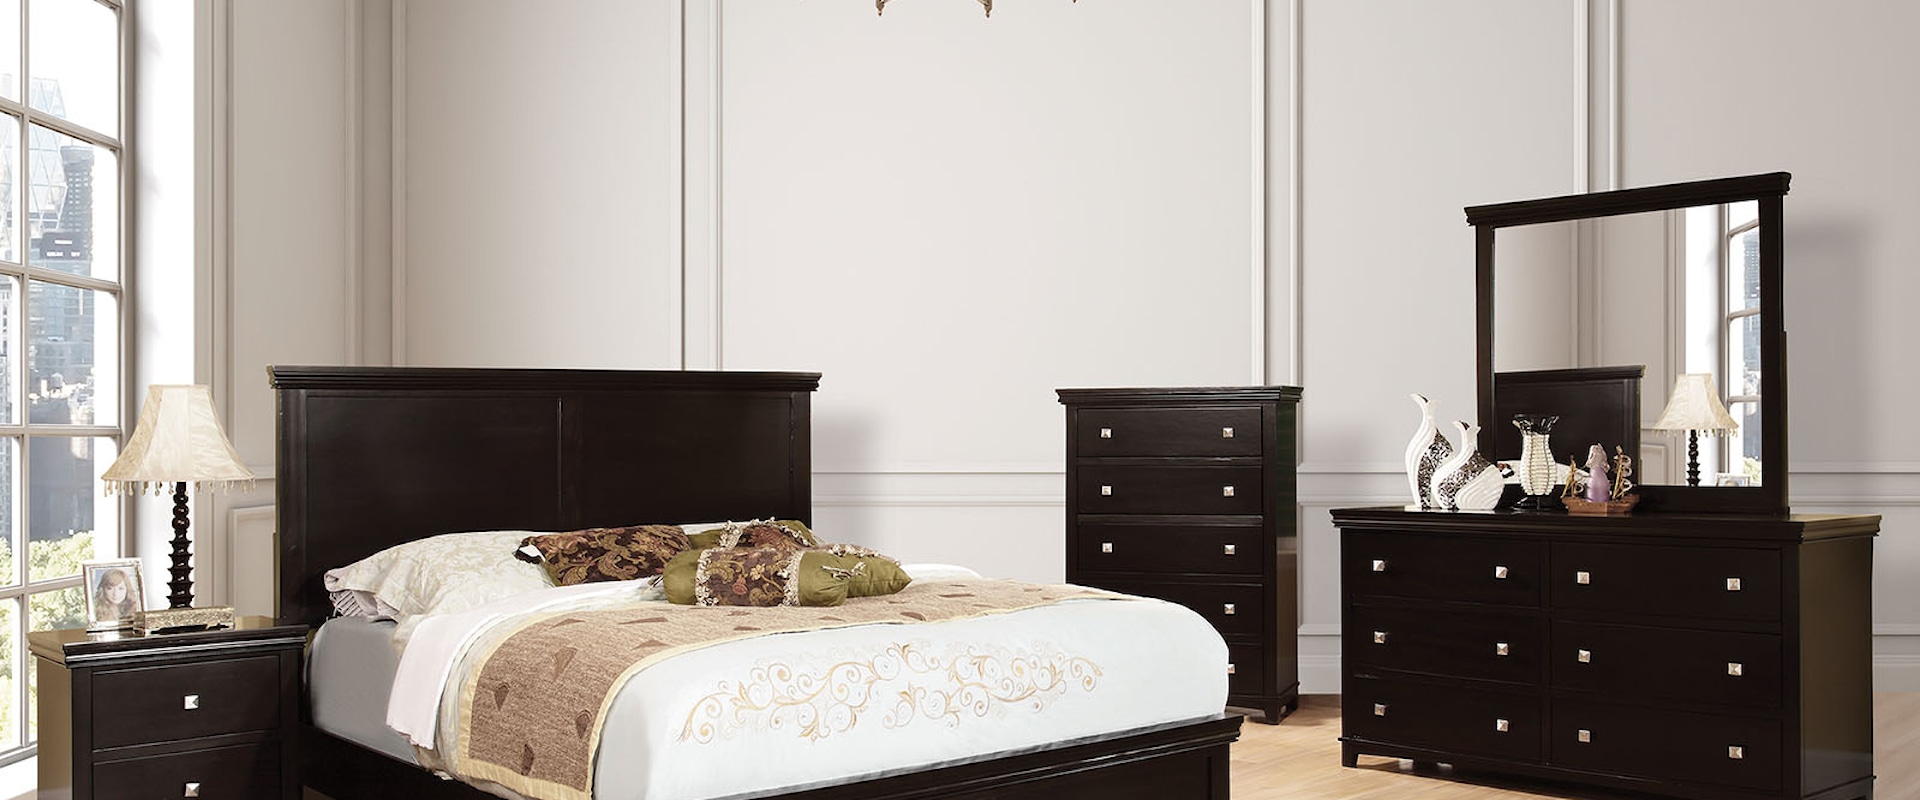 Transitional 5 Piece Queen Bedroom Set with 2 Nightstands